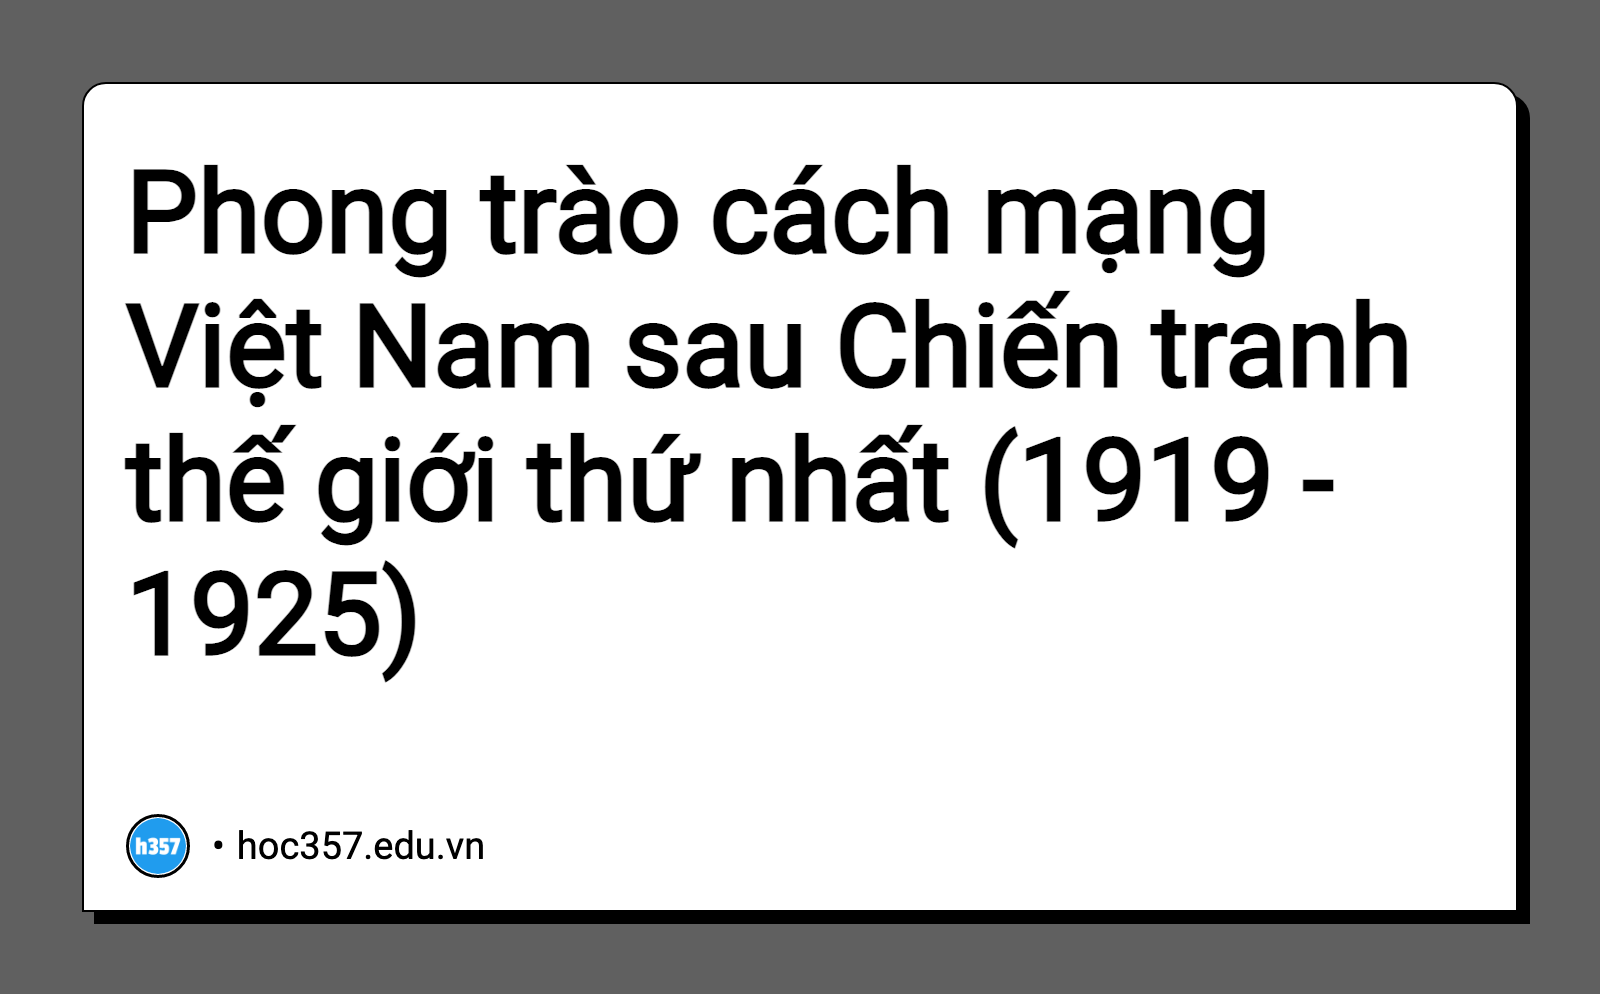 Hình minh họa Phong trào cách mạng Việt Nam sau Chiến tranh thế giới thứ nhất (1919 - 1925)